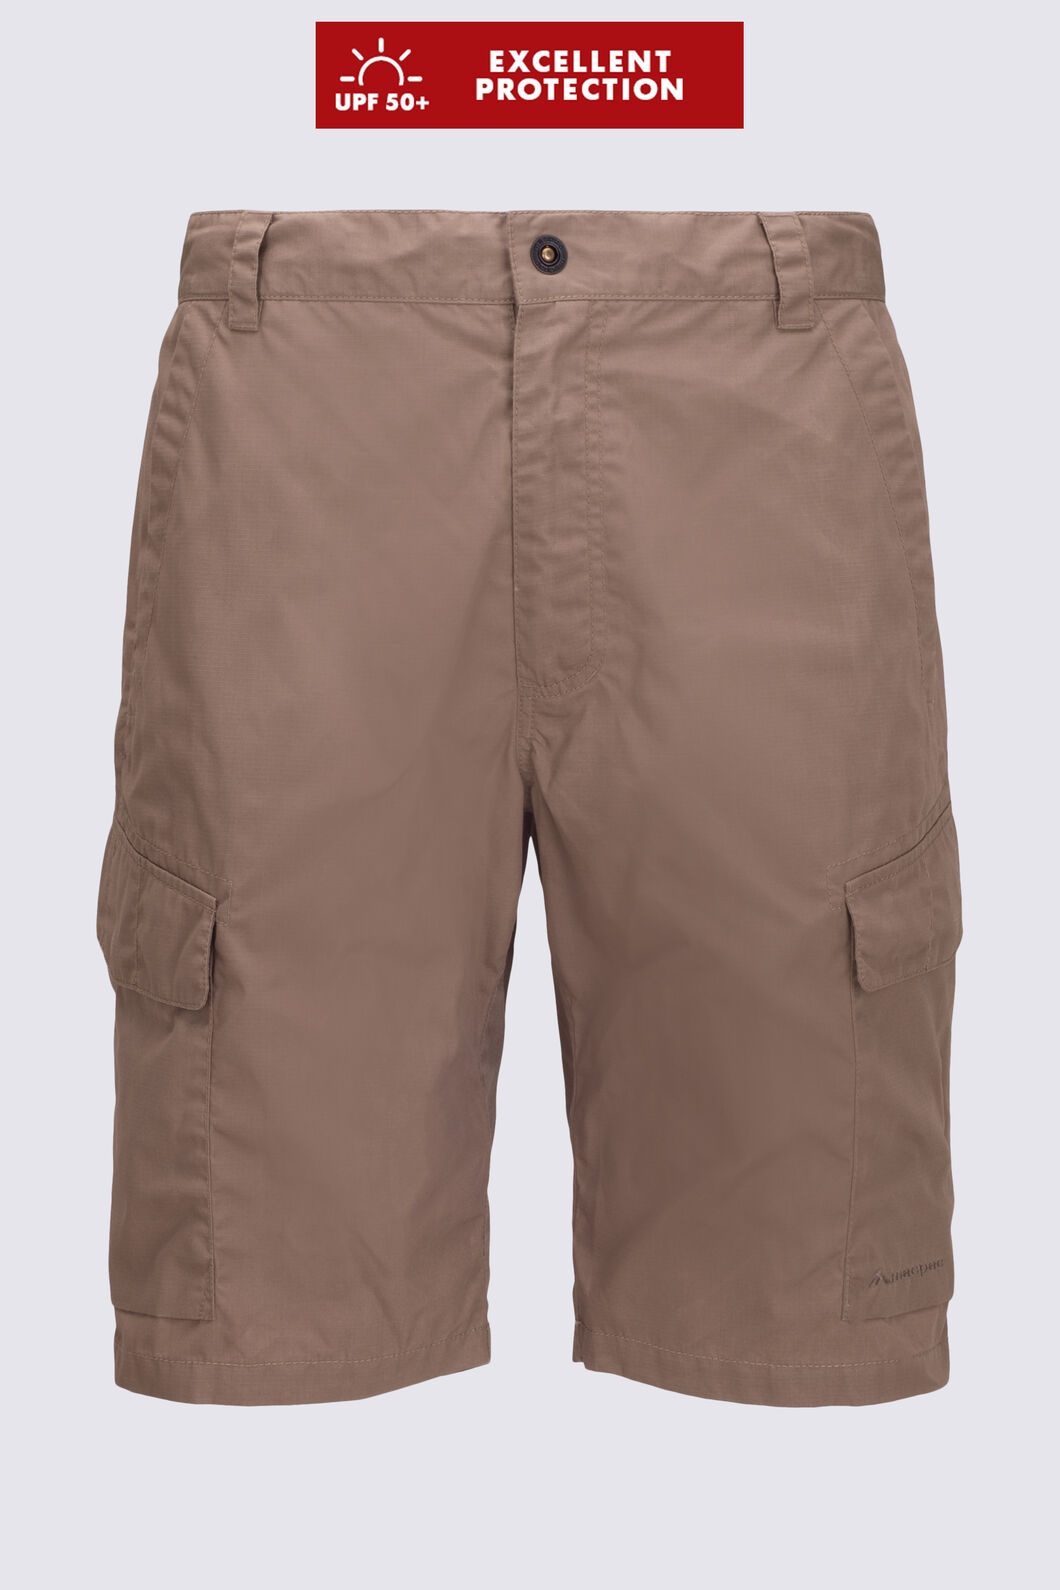 Macpac Men's Campsite Shorts, Lead Grey, hi-res